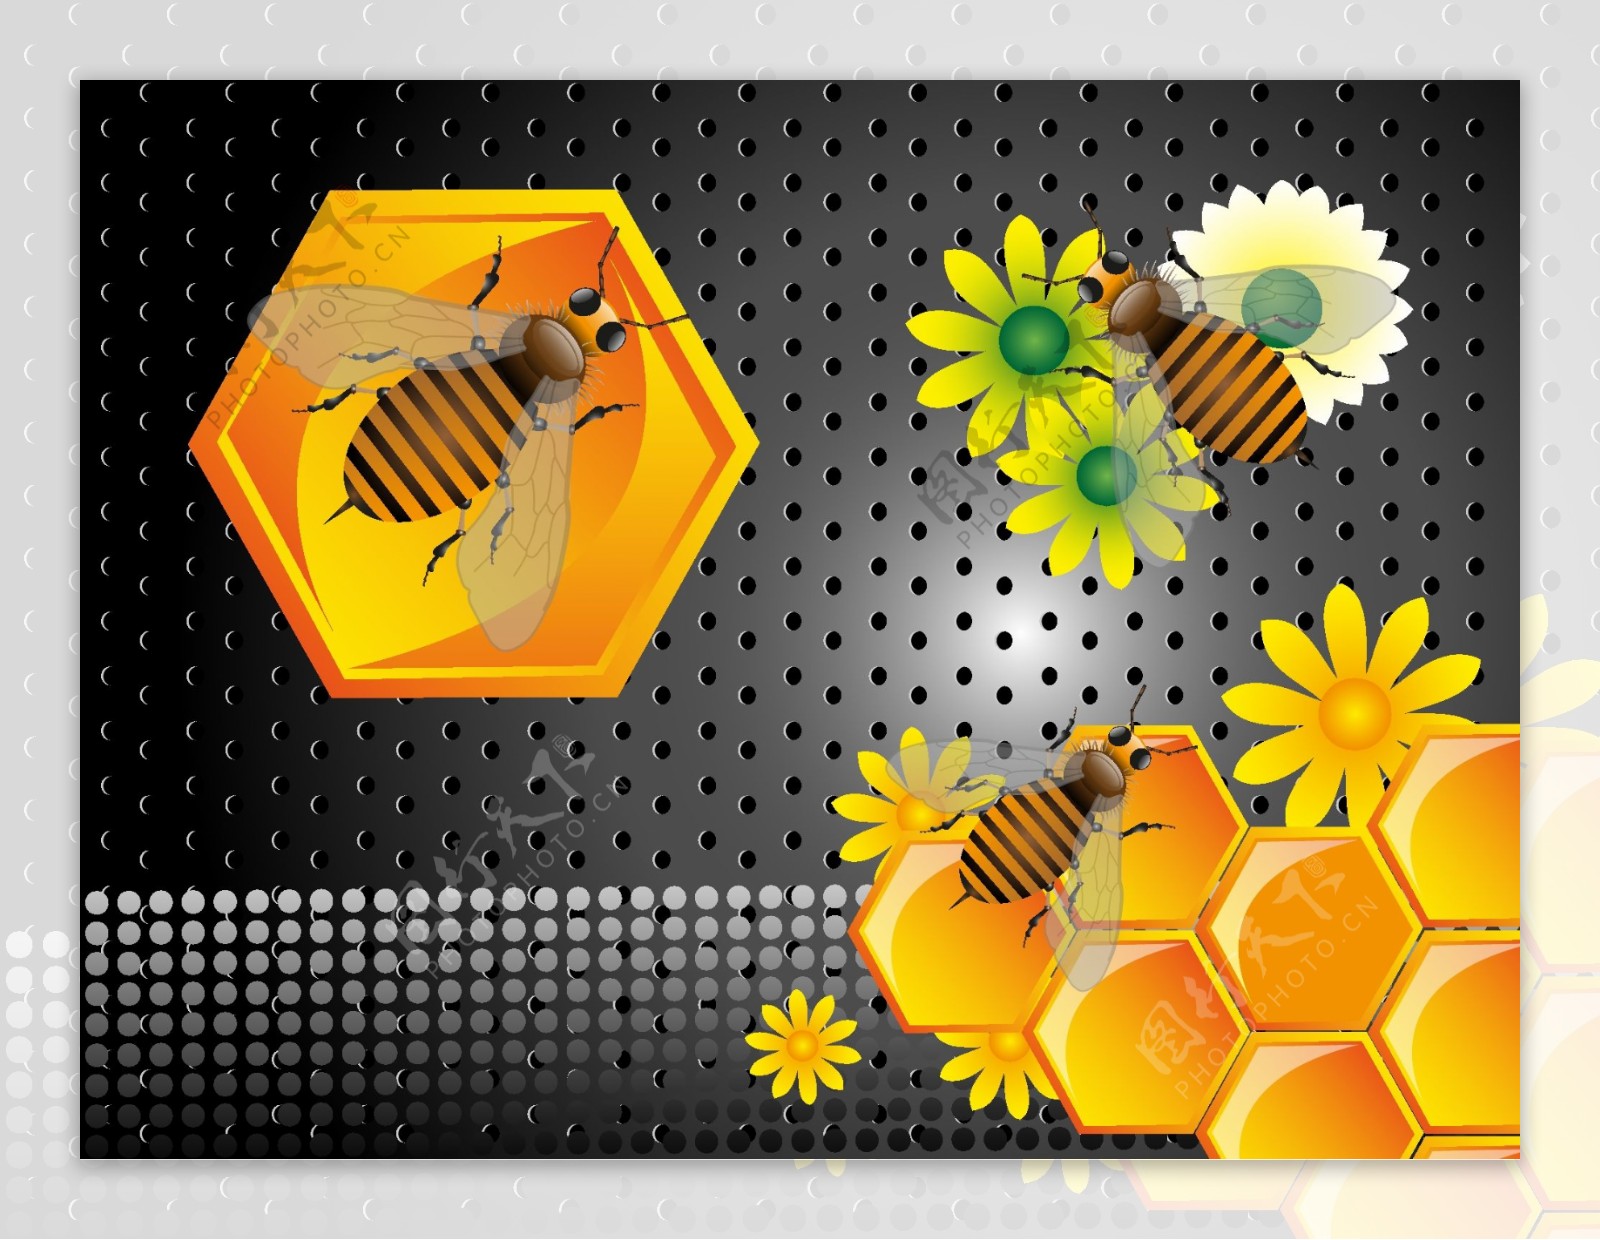 天然蜂蜜背景矢量图片